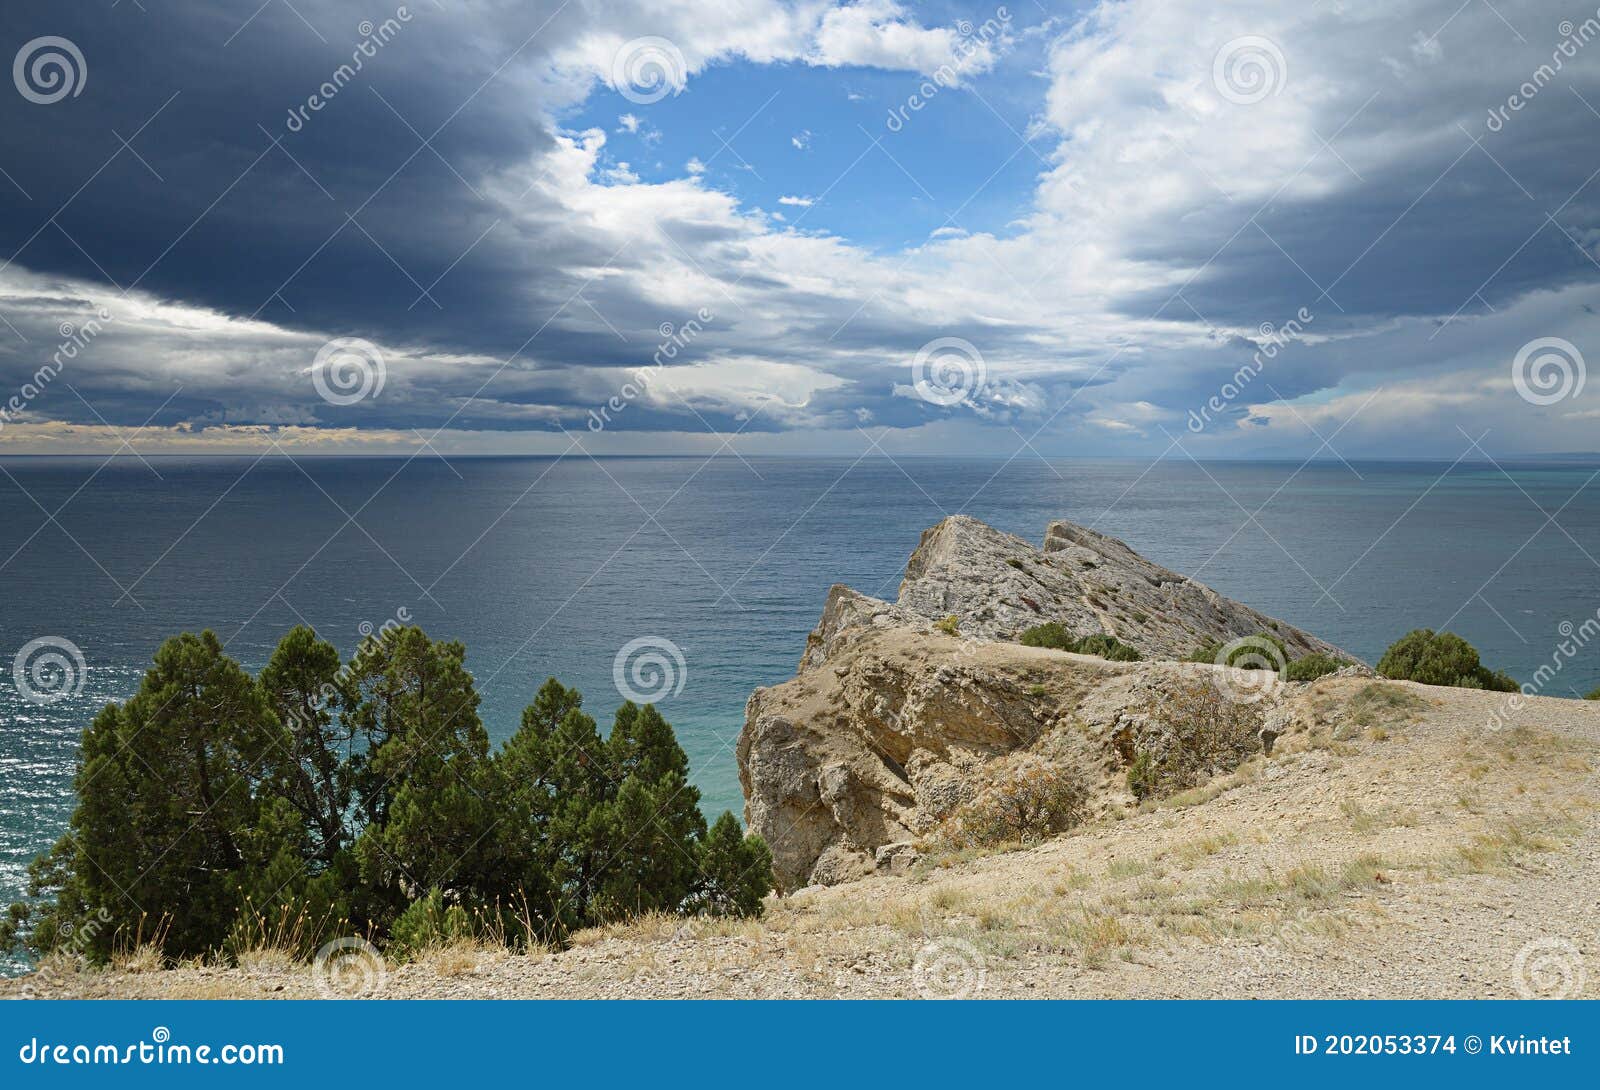 El Cielo Oscuro De Nubes De Las Rocas Del Litoral Dentado De Las Copas De  Los árboles. Foto de archivo - Imagen de esmeralda, cubo: 202053374